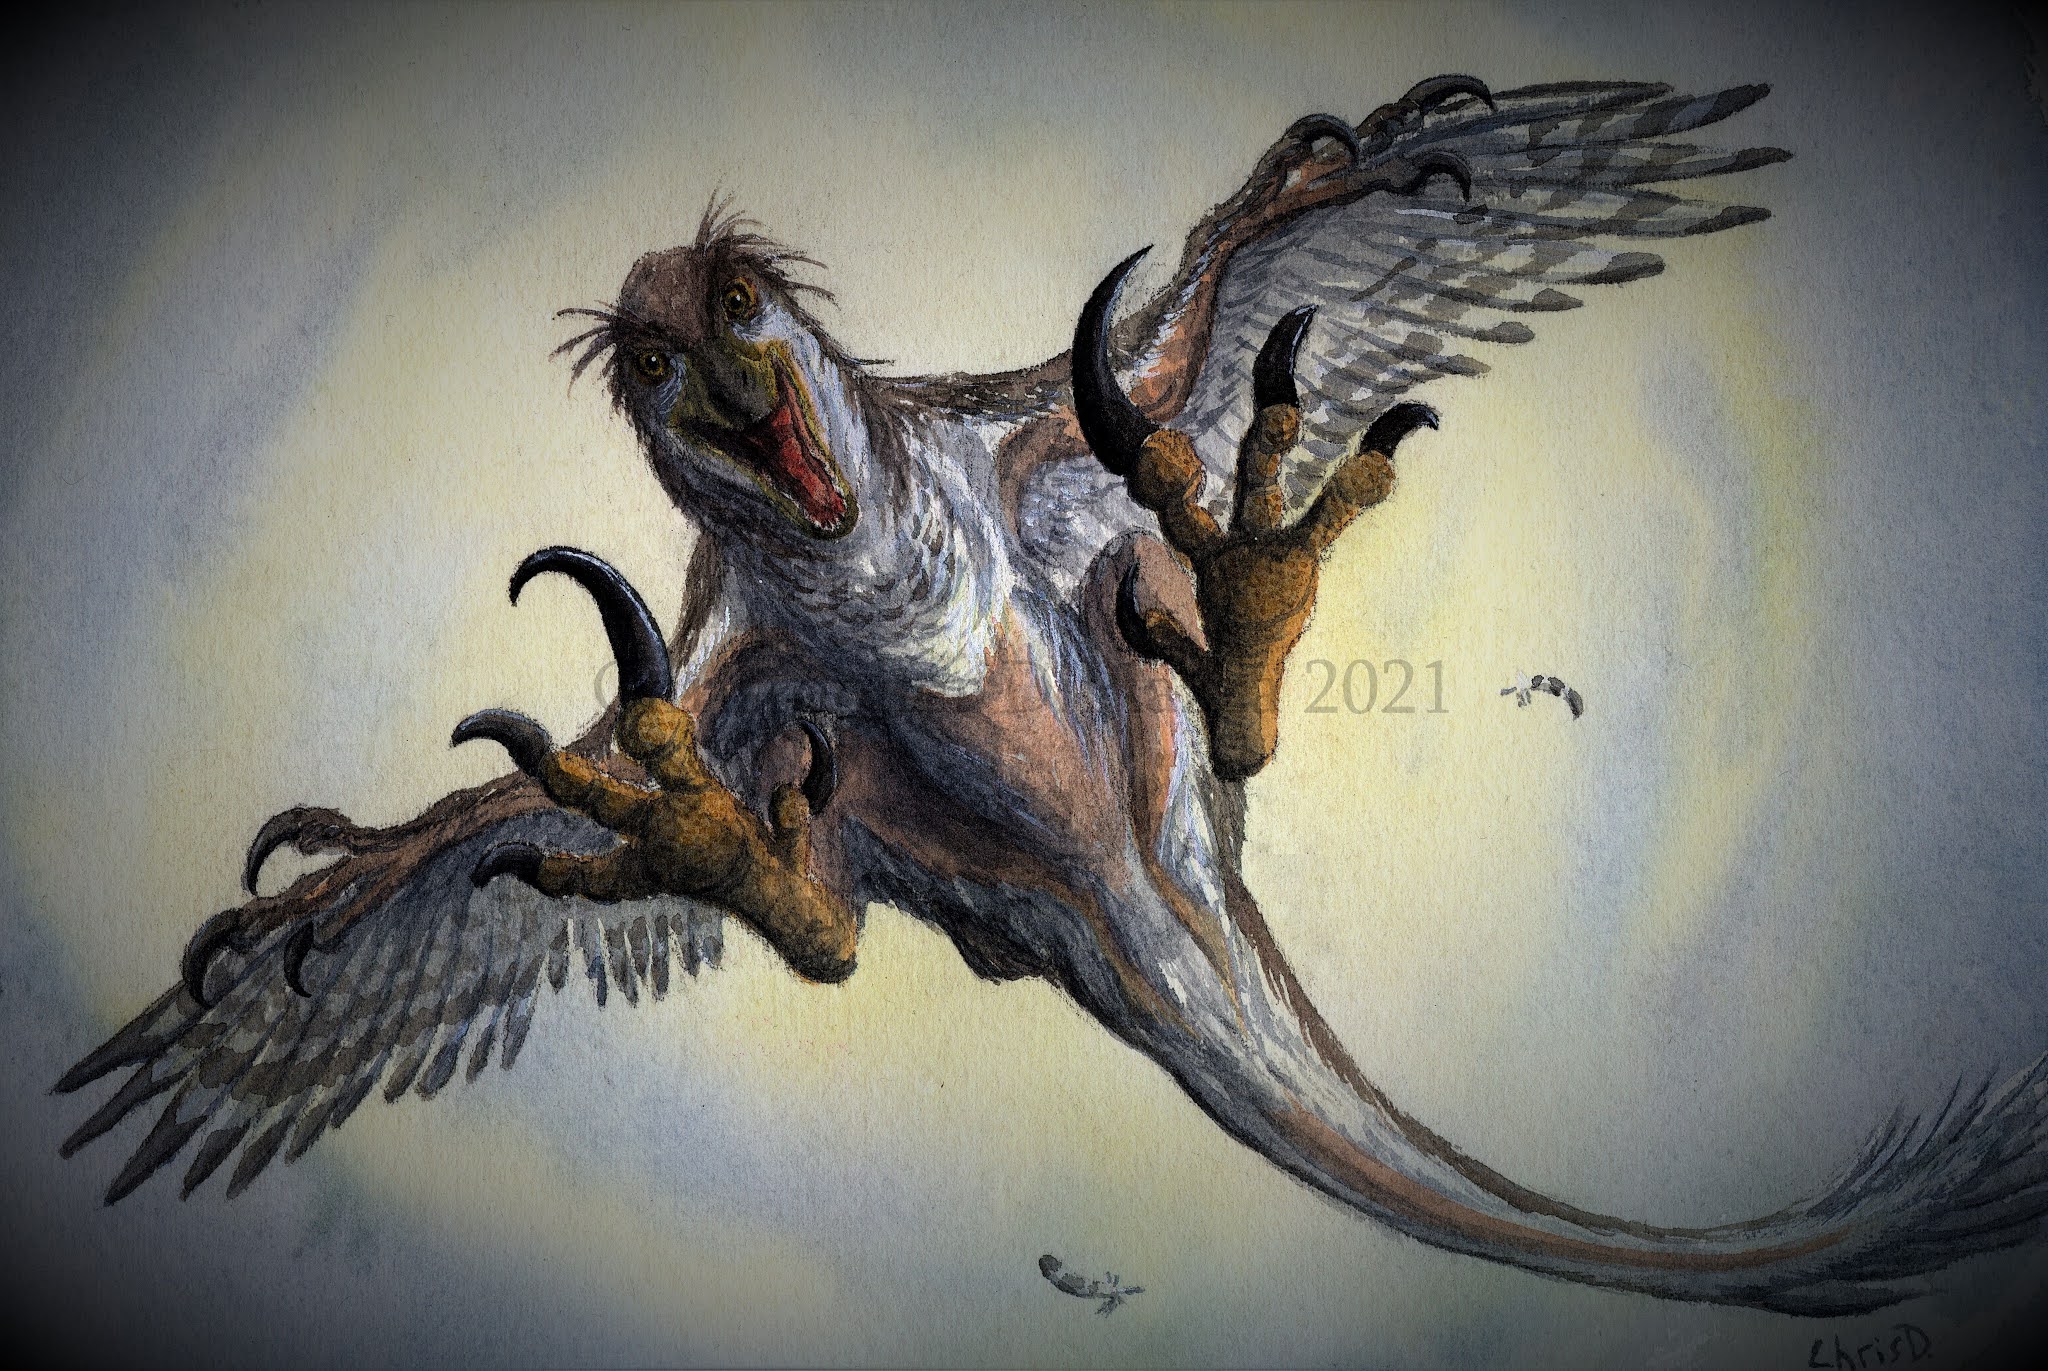 Prehistoric Beast of the Week: Deinonychus: Beast of the Week